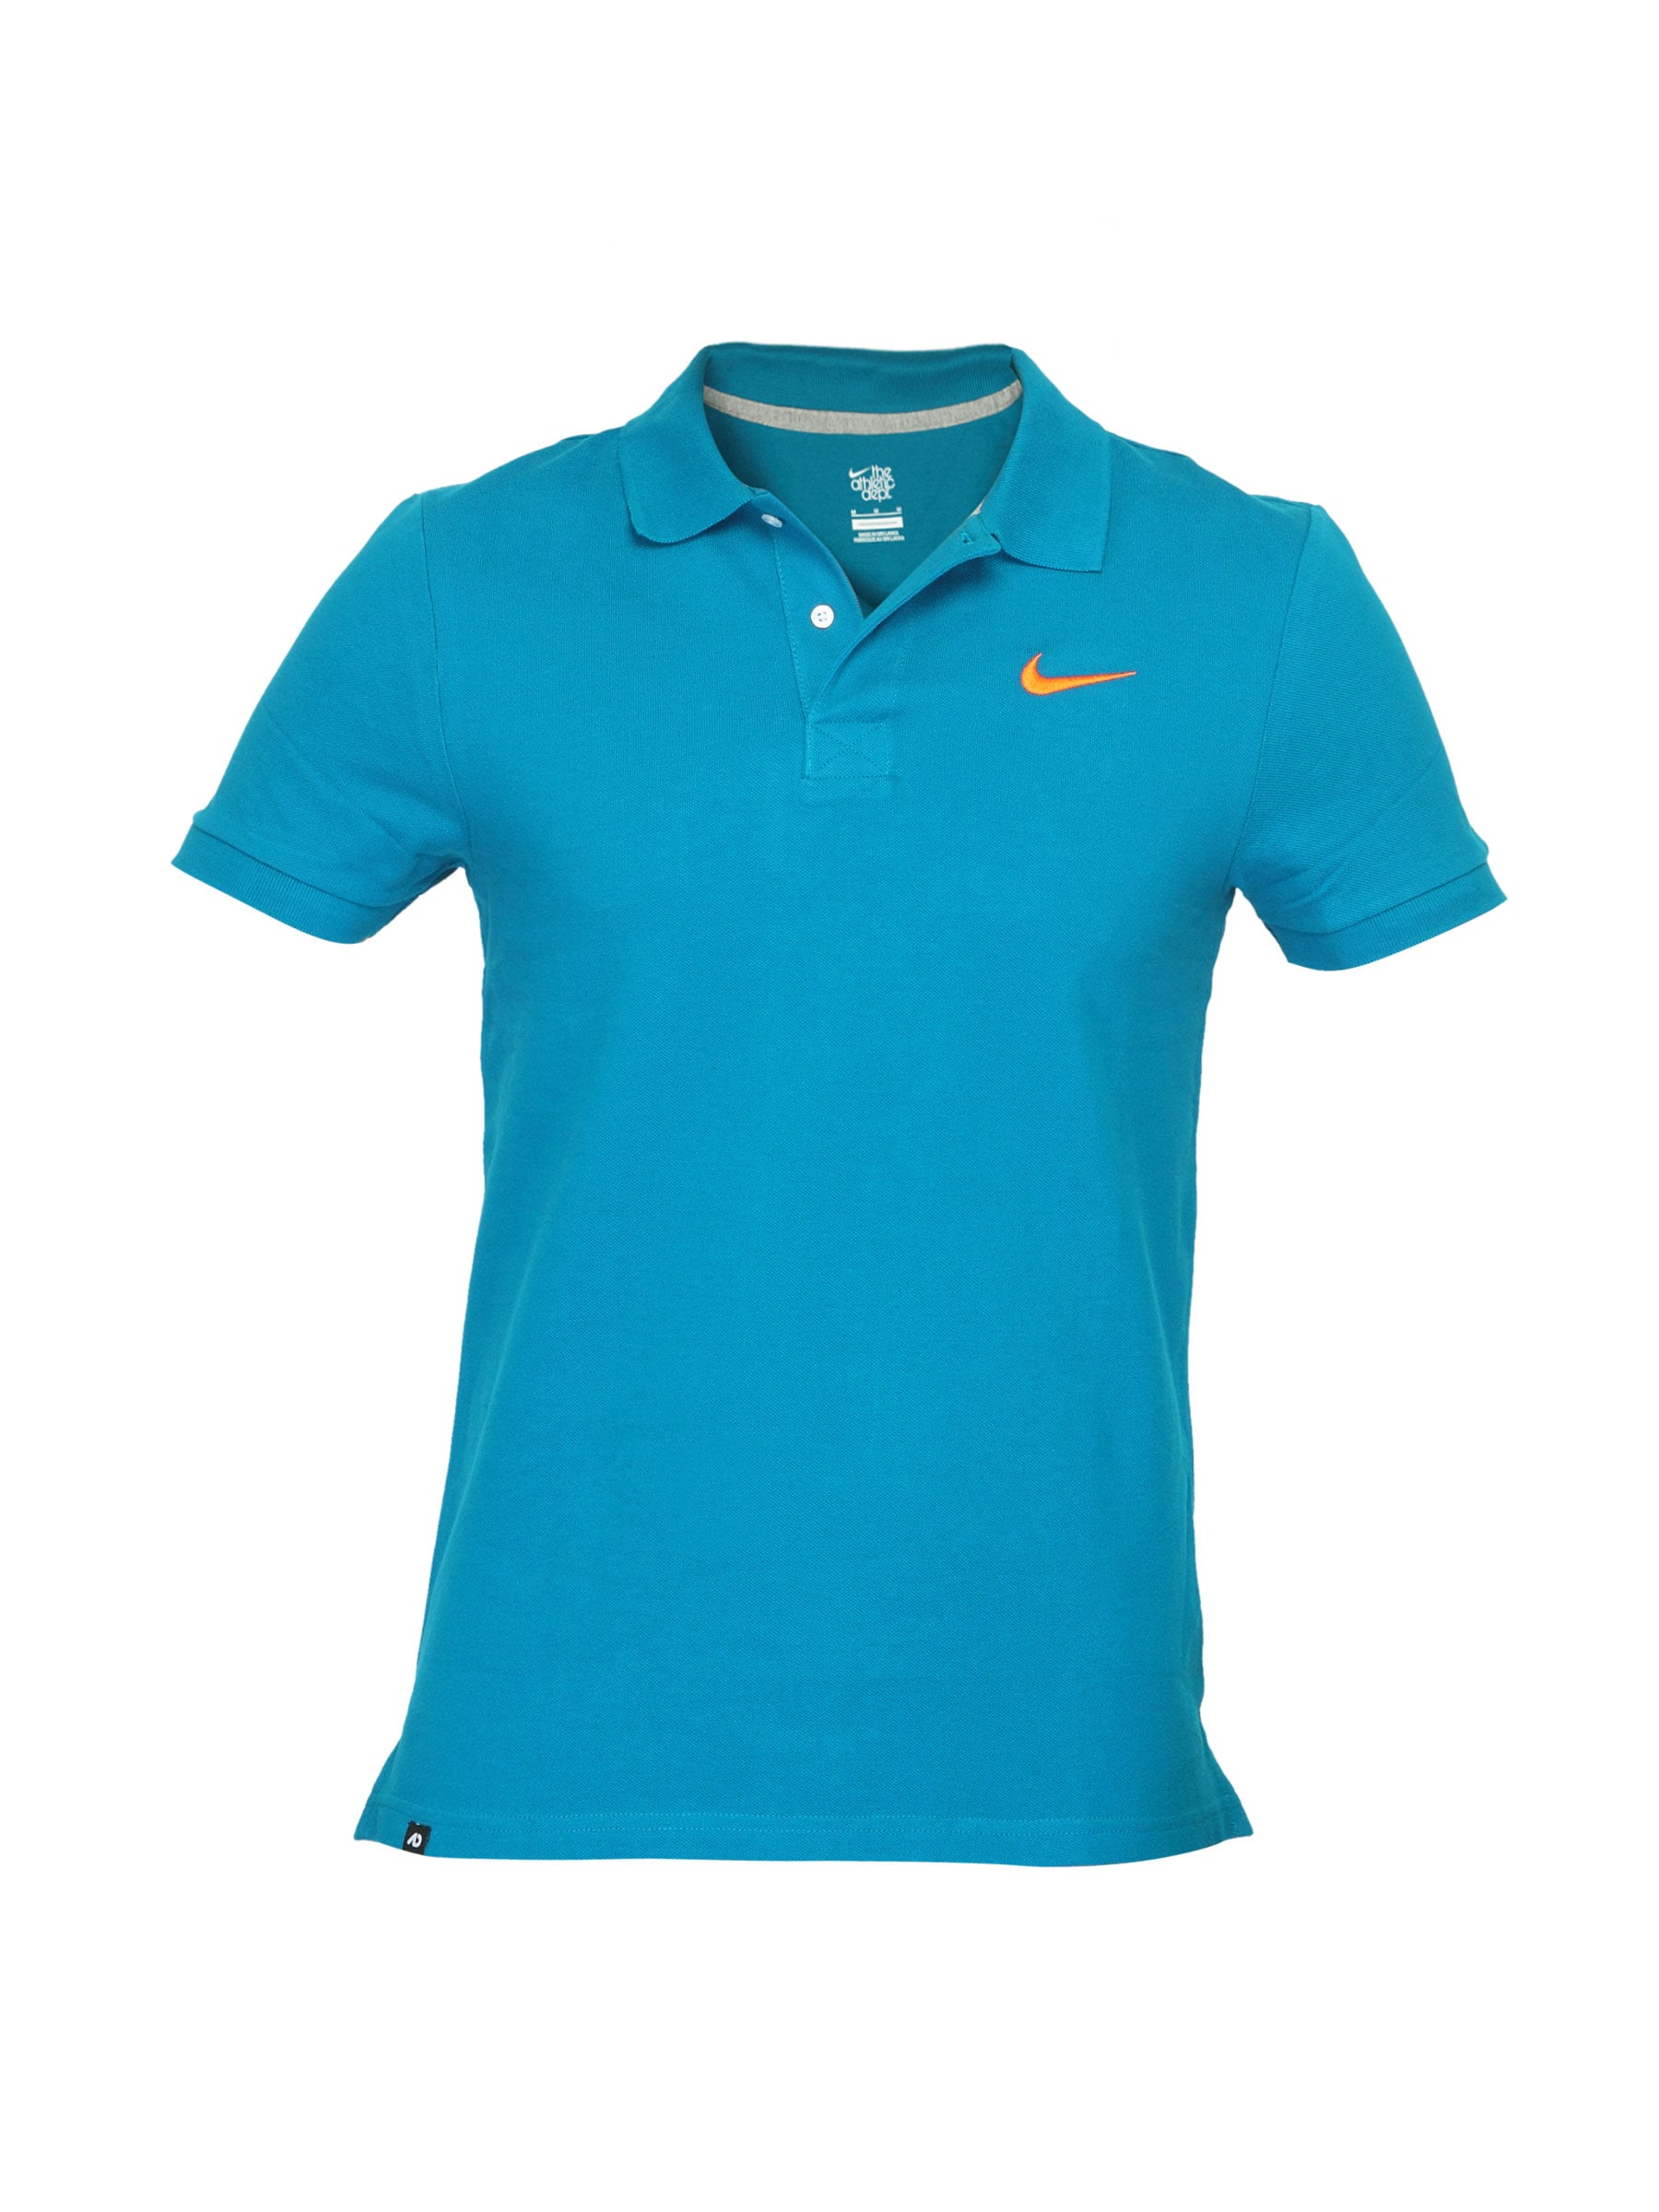 Nike Men Club Pique Polo Blue T-shirt